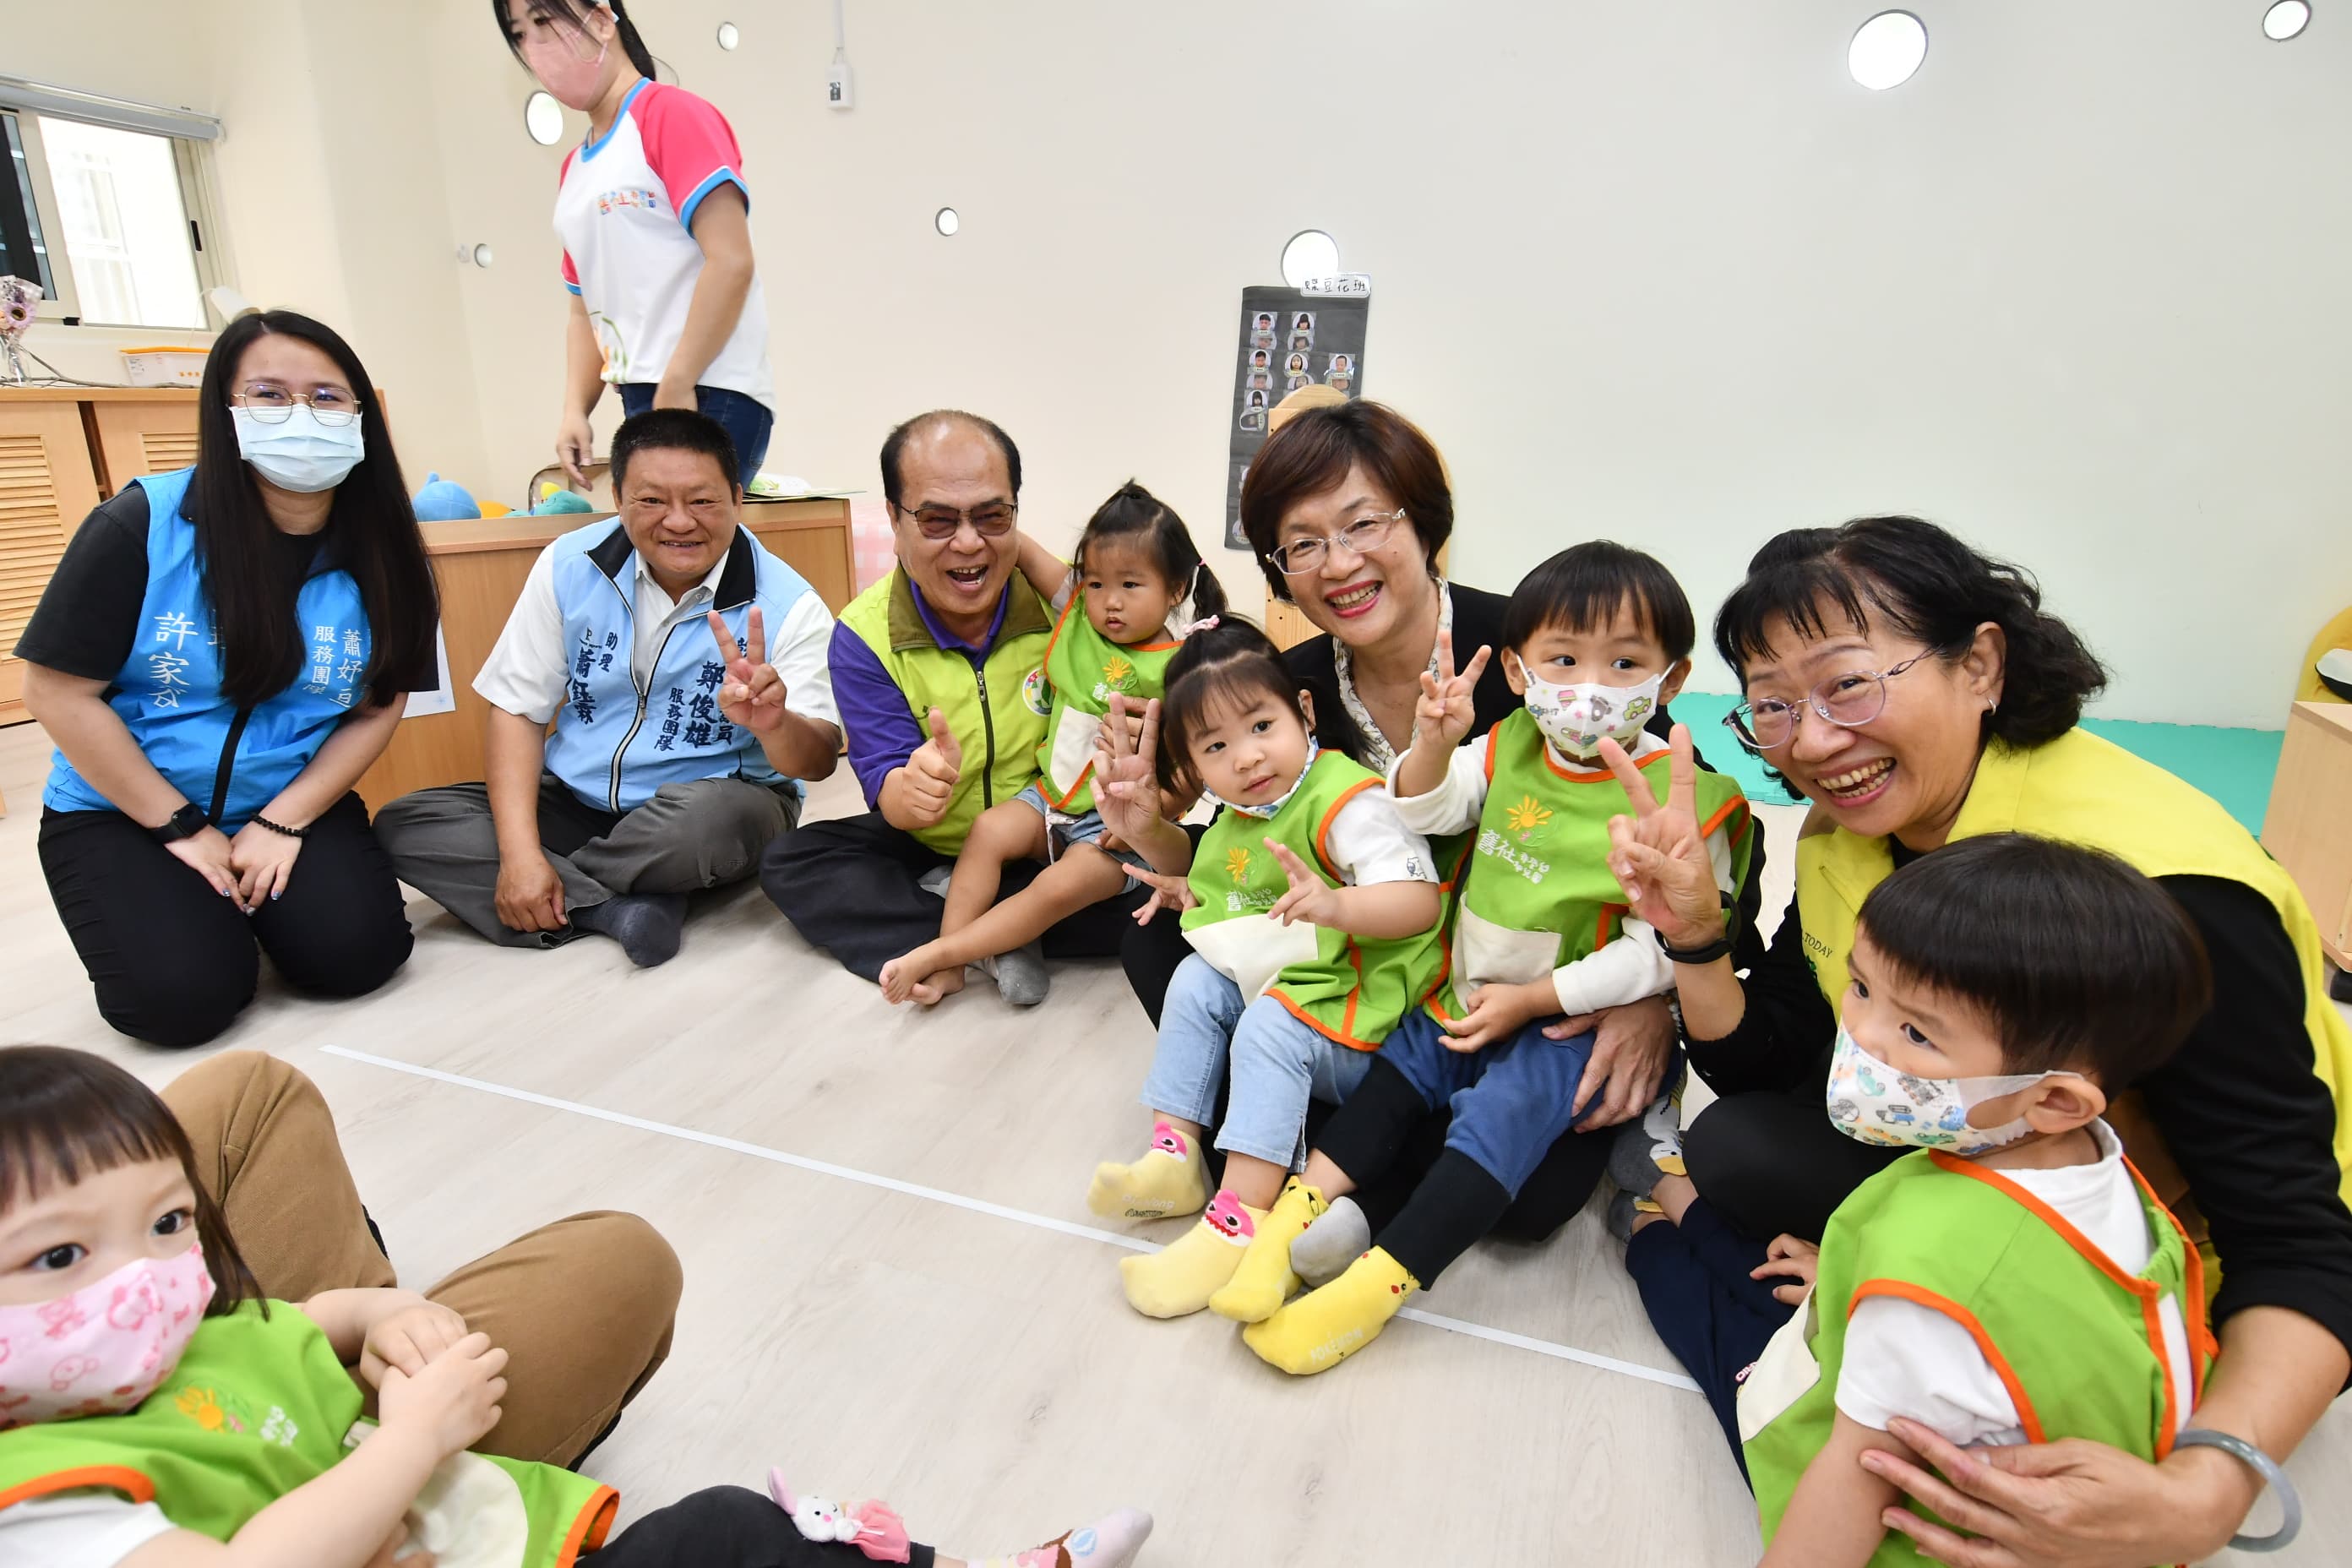 彰化县政府力推托婴中心，希望建置完善托婴环境留住年轻人口。记者简慧珍／摄影